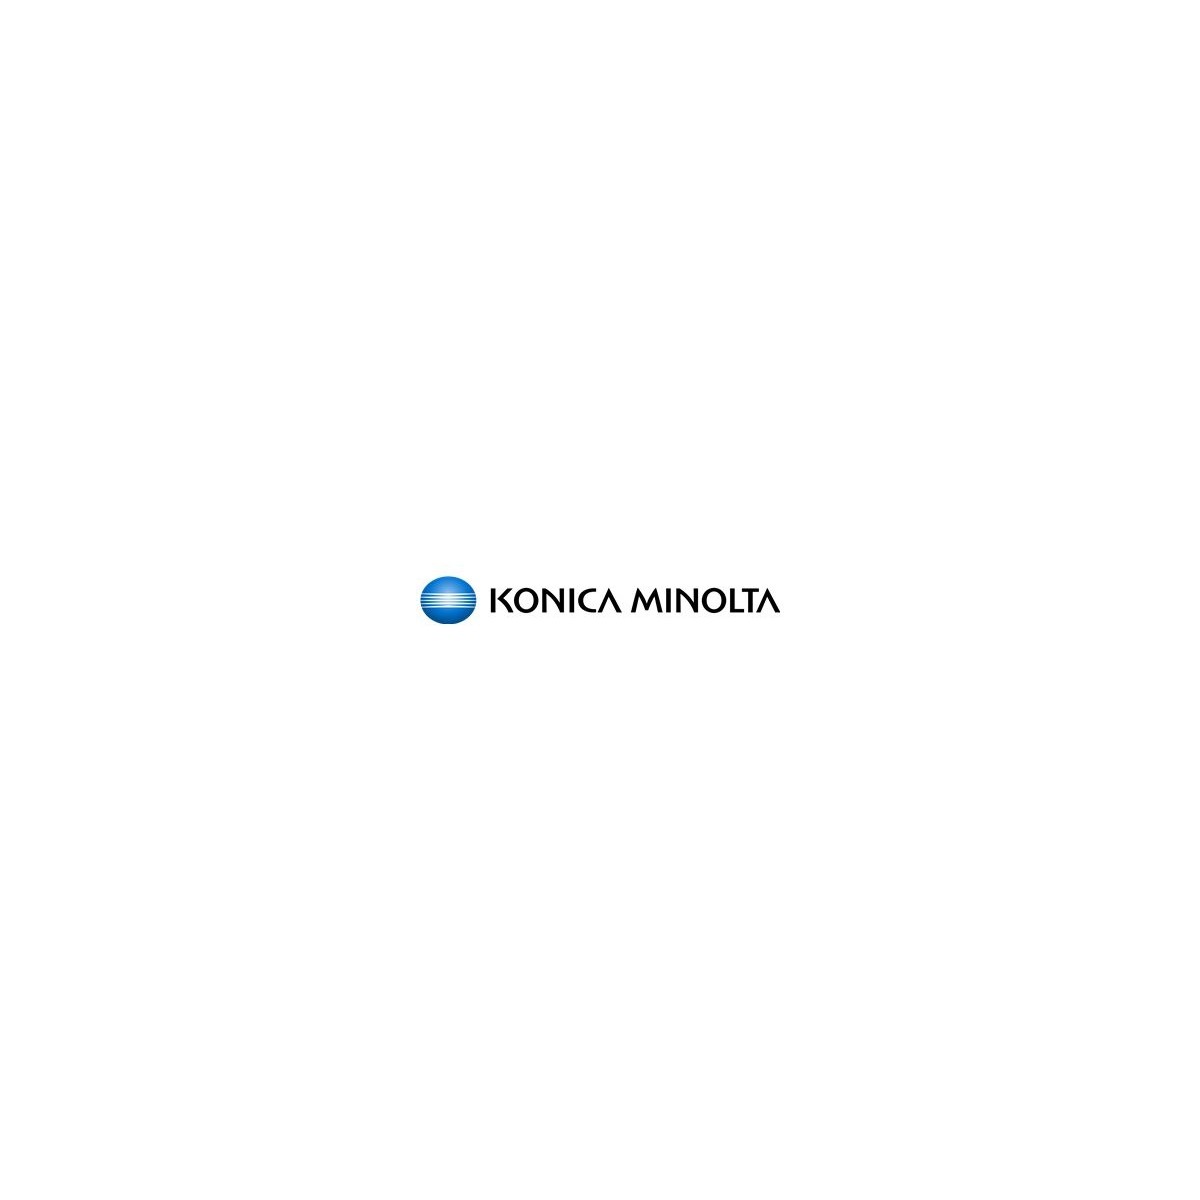 Konica Minolta 4969-0292 - Original - Konica Minolta - KL-5100 - 1 pc(s)